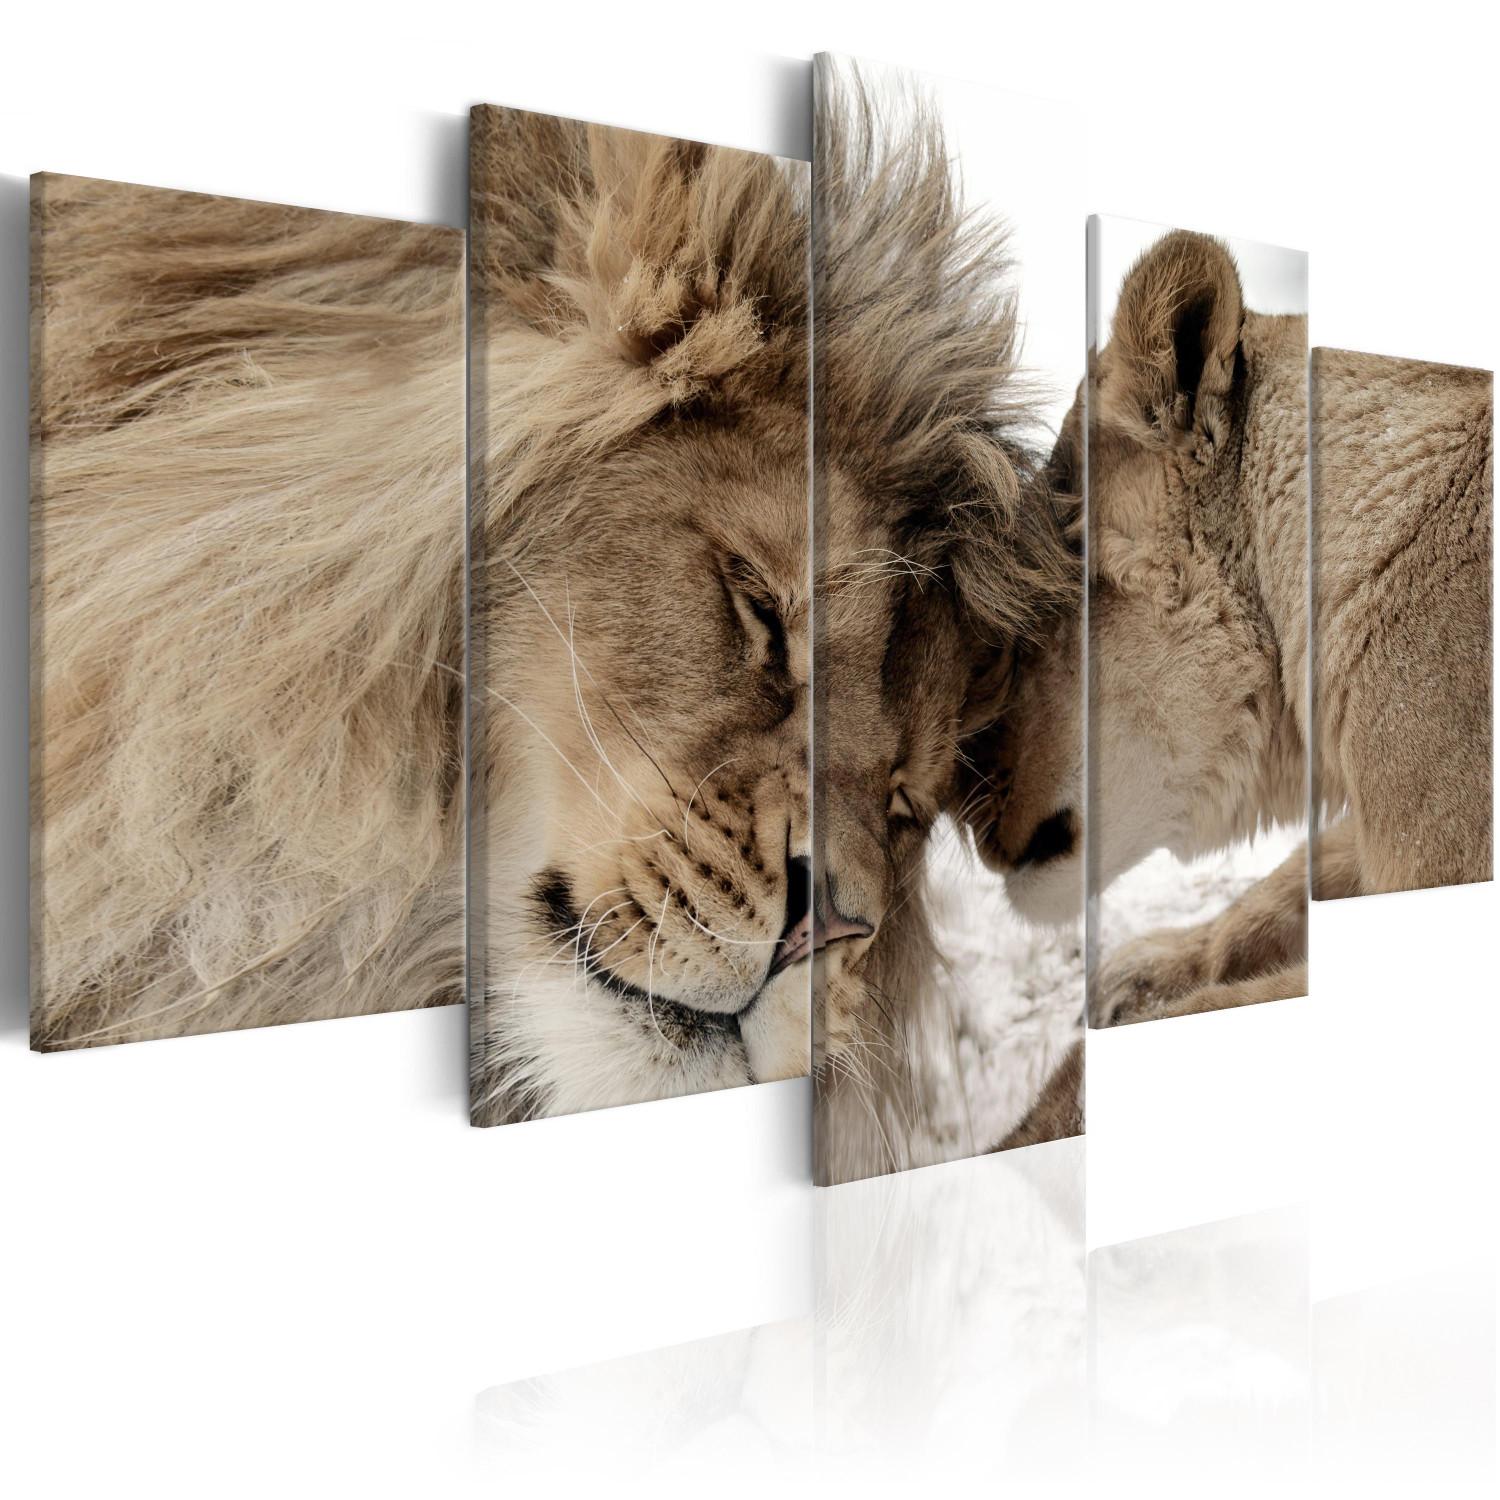 Cuadro decorativo Caricias de león (5 piezas) - pareja felinos ambiente romántico